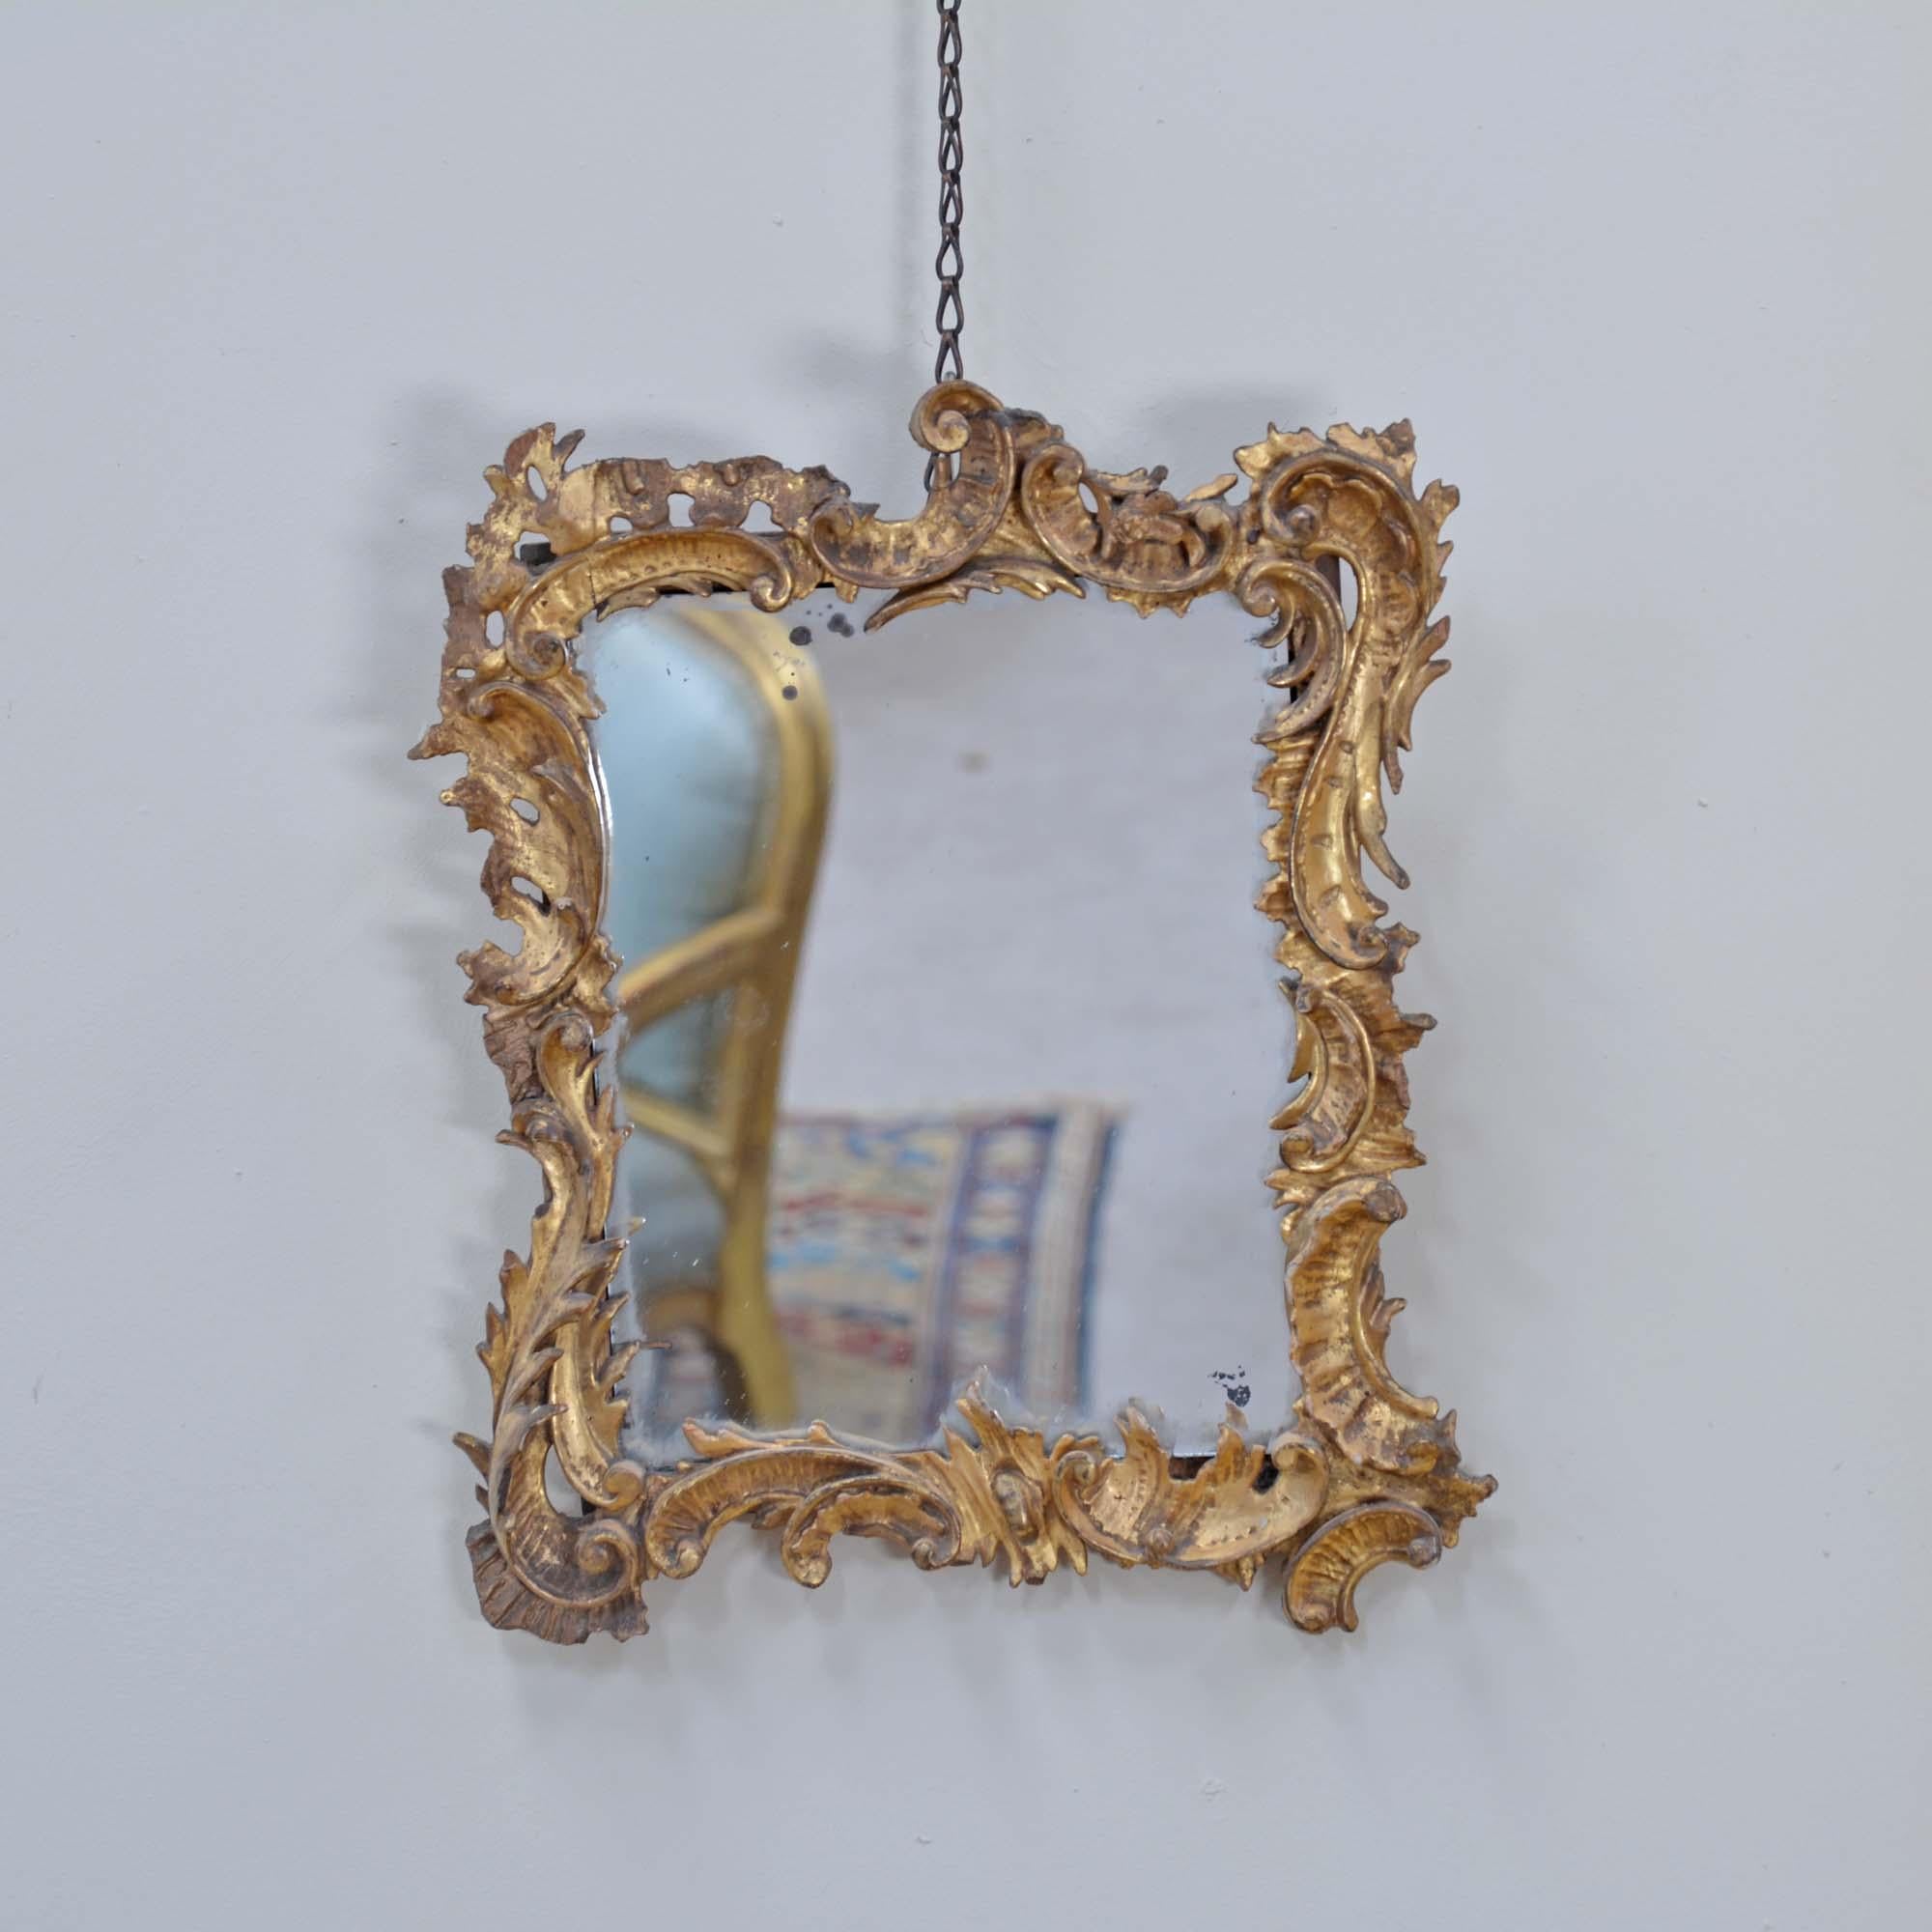 Petit miroir géorgien en bois sculpté et doré, avec un cadre asymétrique en bois sculpté et feuillagé, avec des volutes en C, dans une dorure à l'eau d'origine. La plaque de miroir est plus tardive mais présente un certain caractère.
Anglais, vers